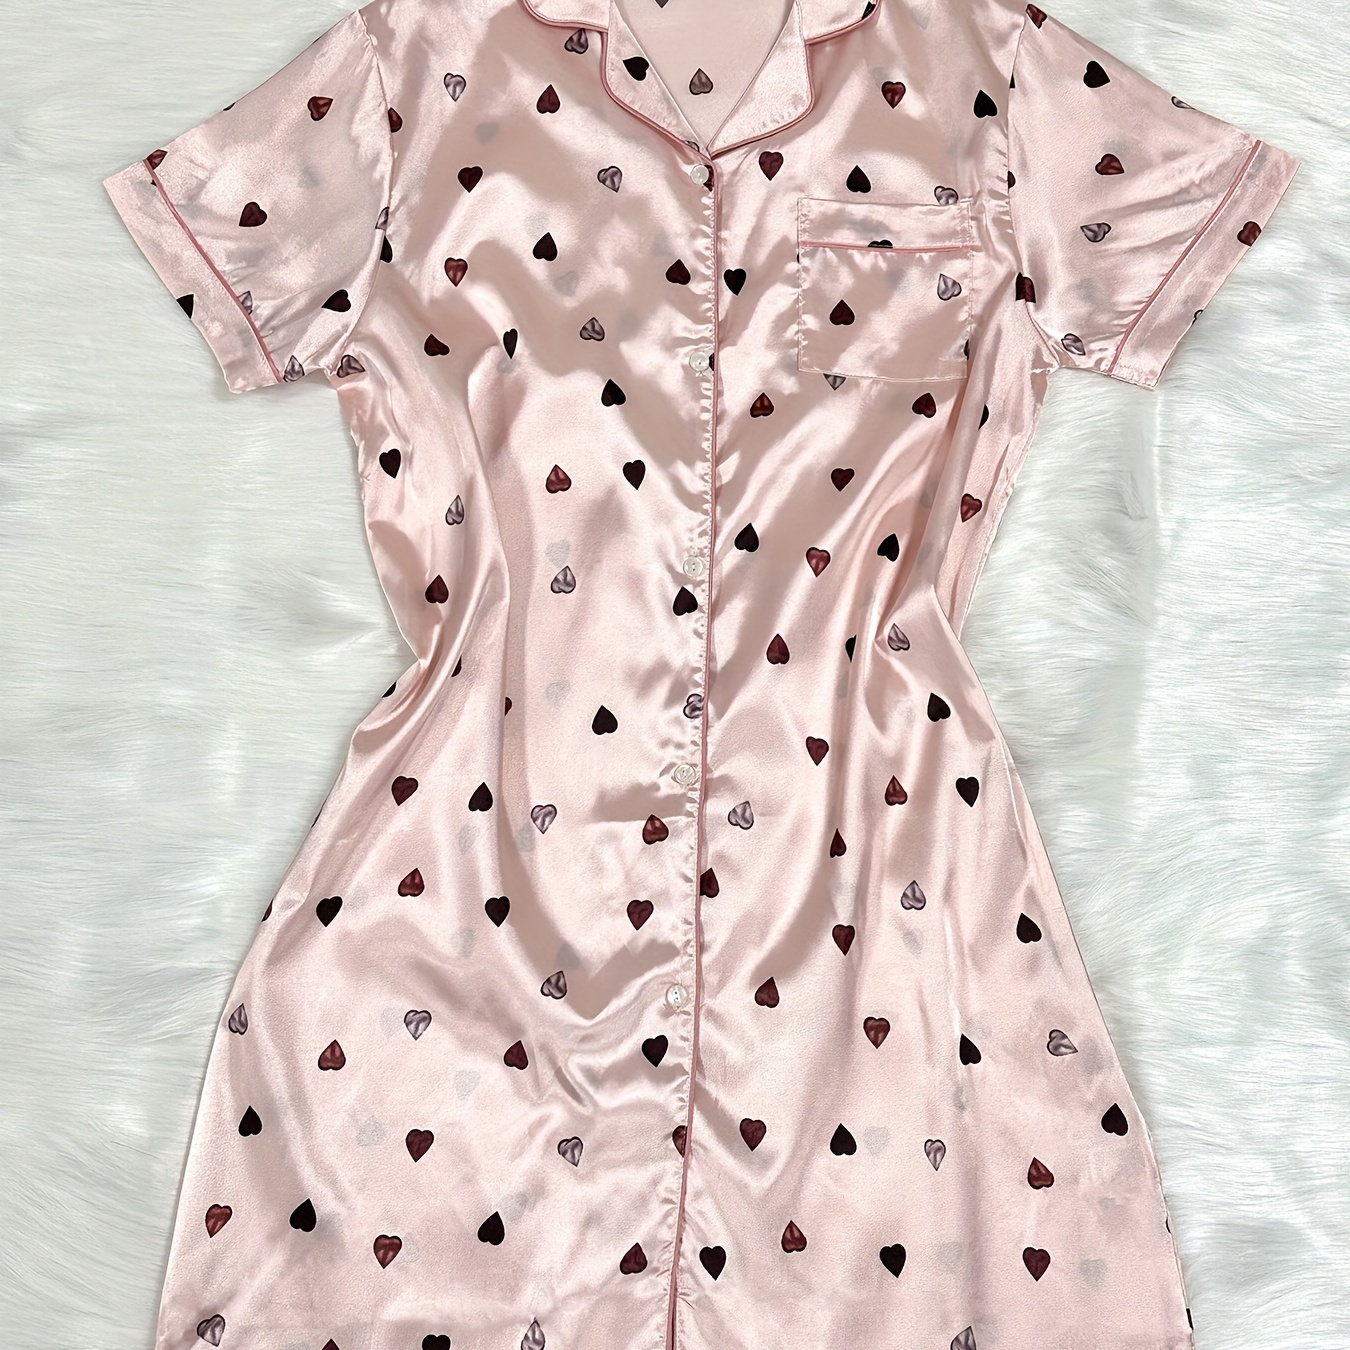 

Women's Heart Print Casual Satin Sleepwear Dress, Short Sleeve Buttons Lapel Shirt Dress, Comfortable Nightgown